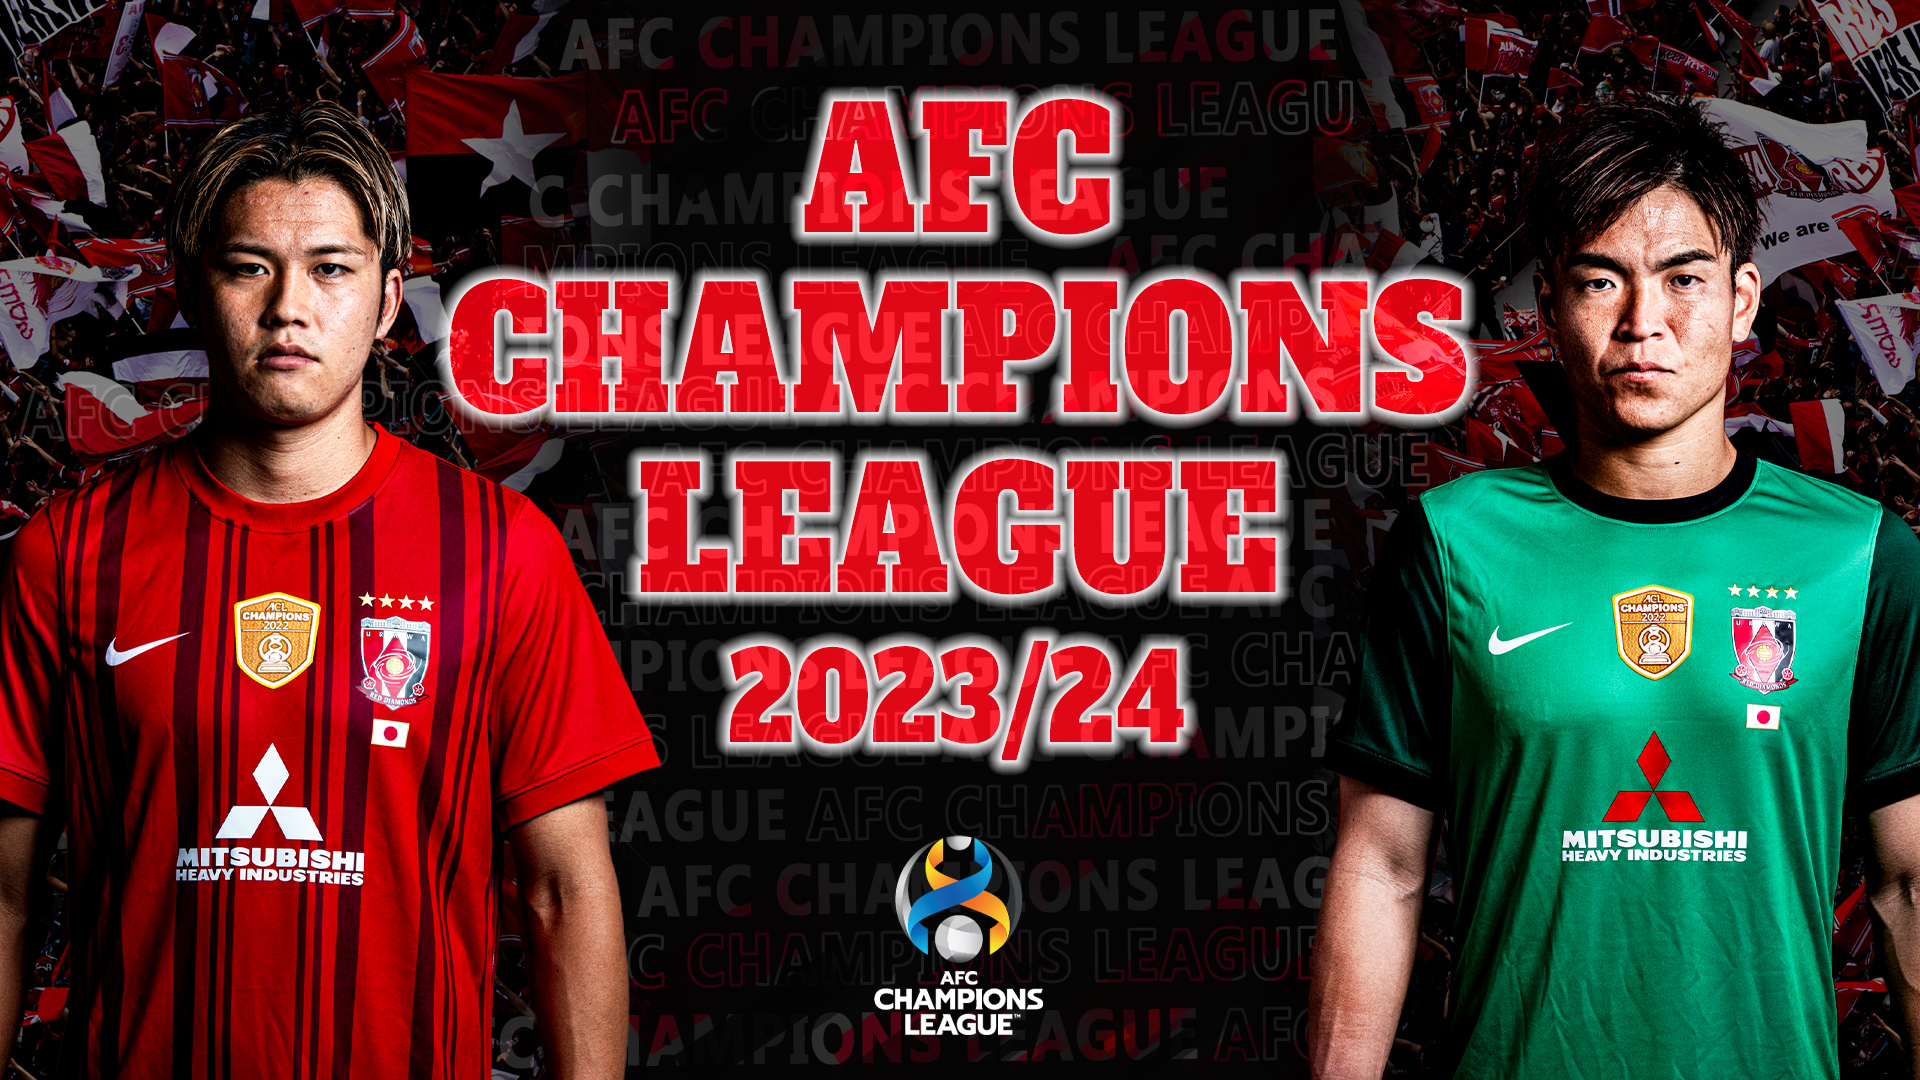 AFC Champions League 2023/24